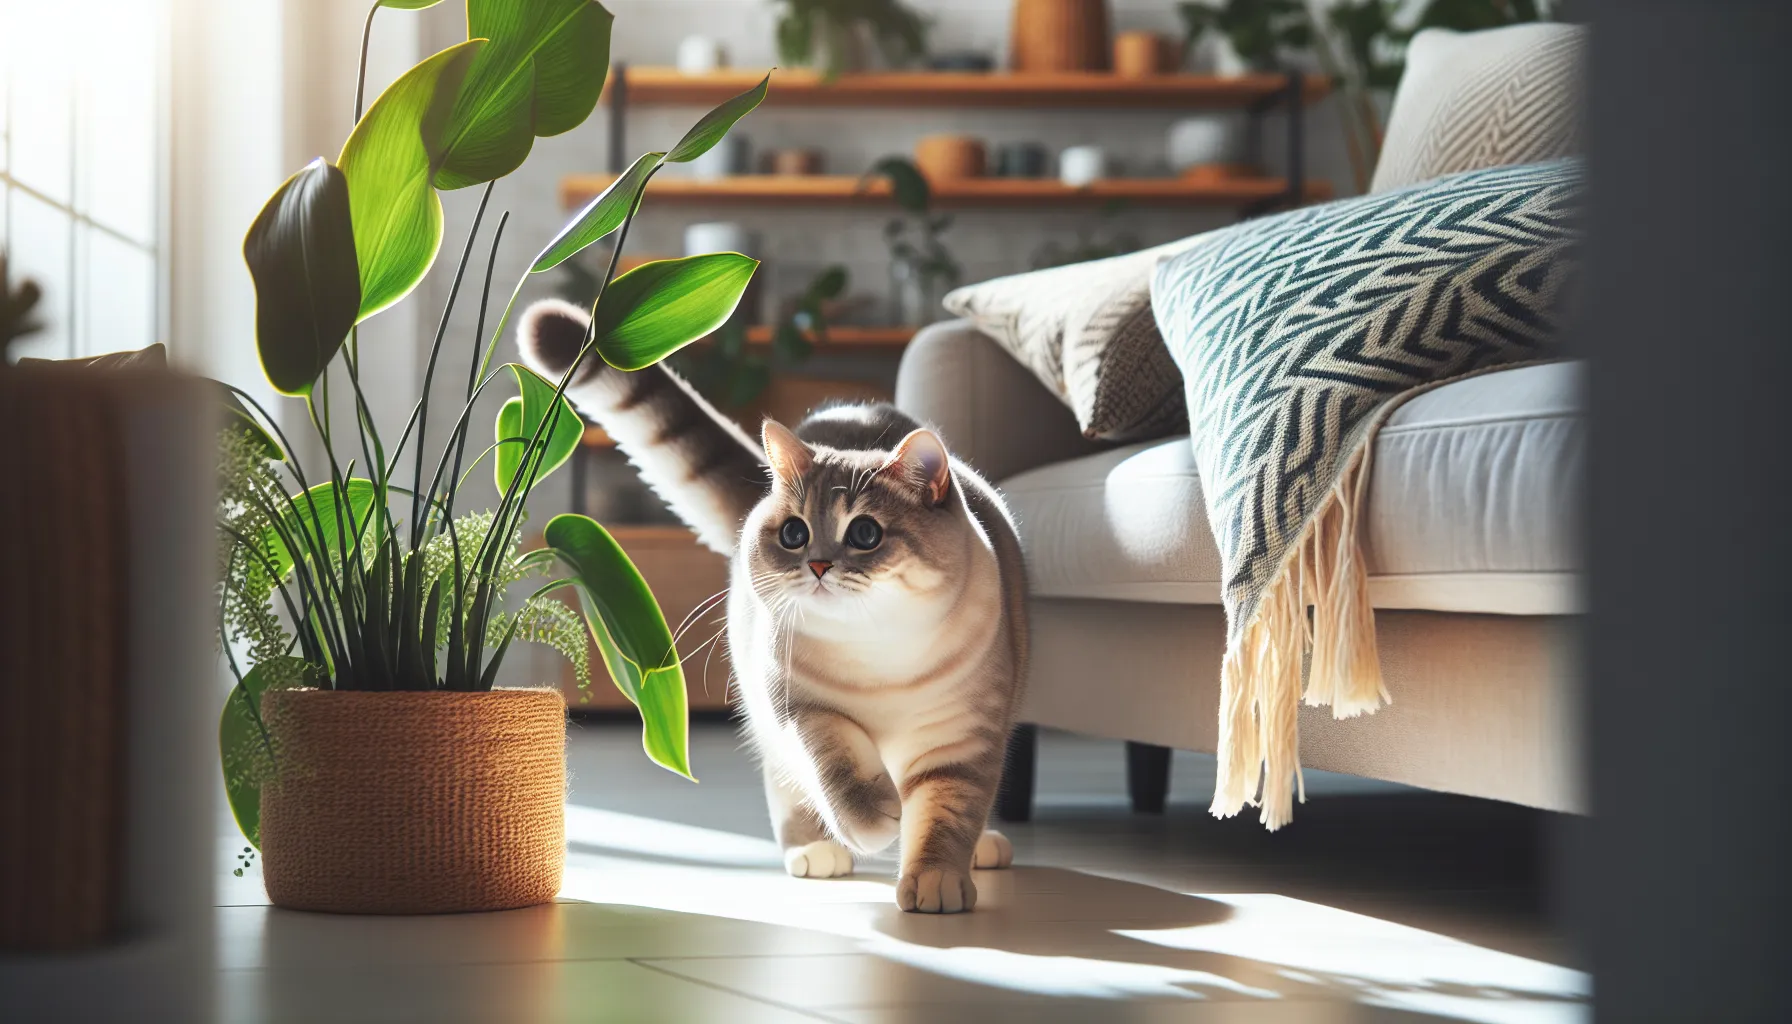 Imagen de un gato jugando cerca de plantas seguras para mascotas en una casa.